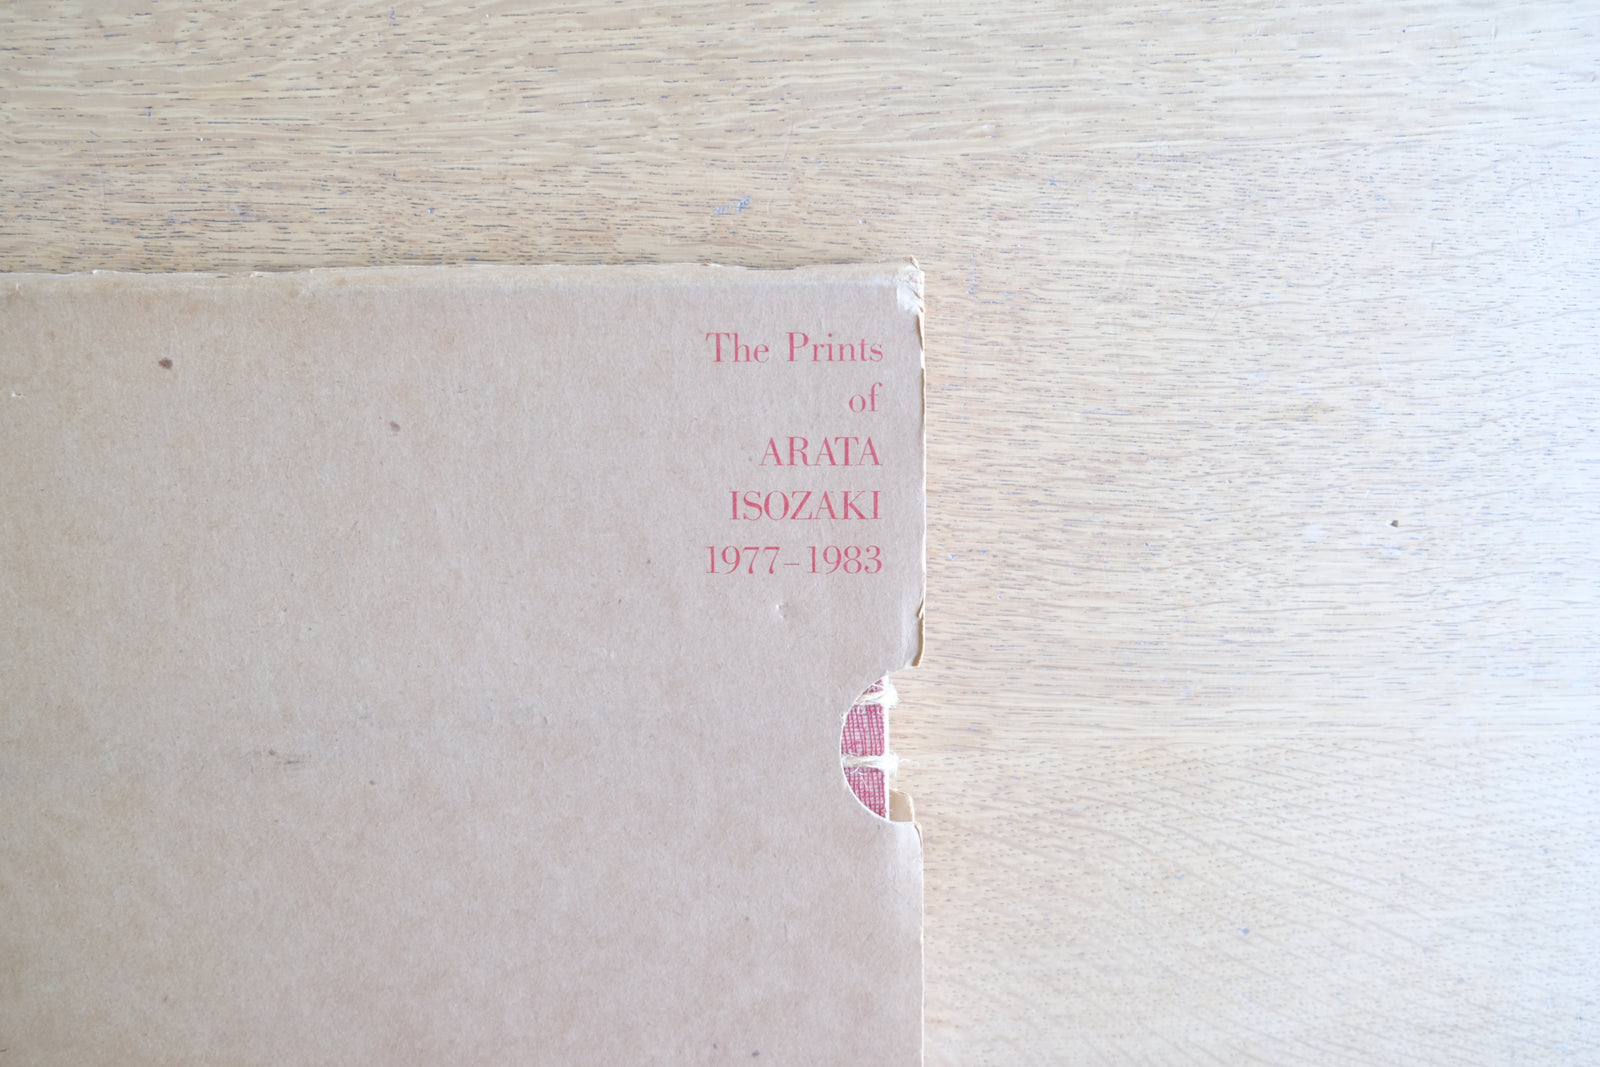 ［限定1300部］ 磯崎新 The Prints of Arata Isozaki 1977-1983 オリジナルシルクスクリーン1点綴込